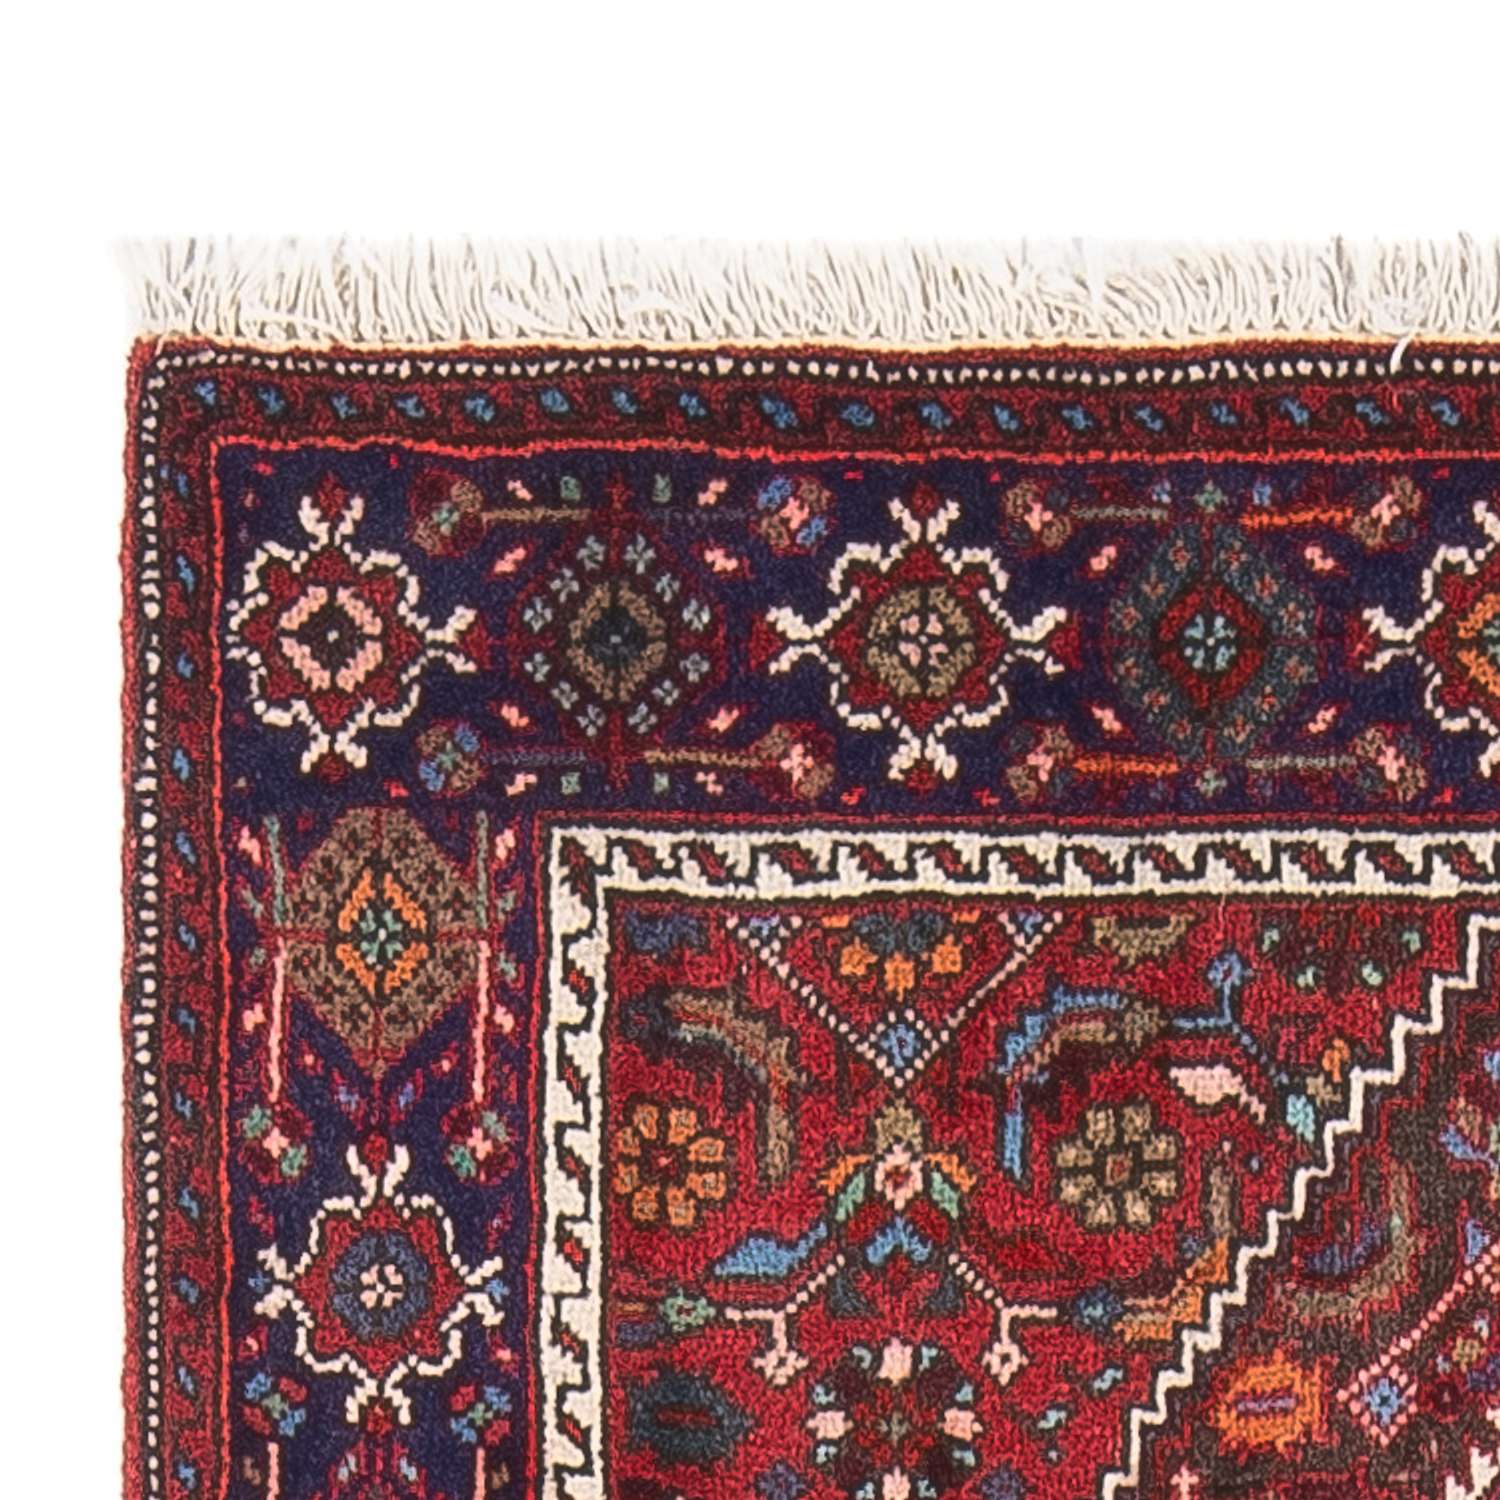 Tapis persan - Nomadic - 130 x 90 cm - rouge clair